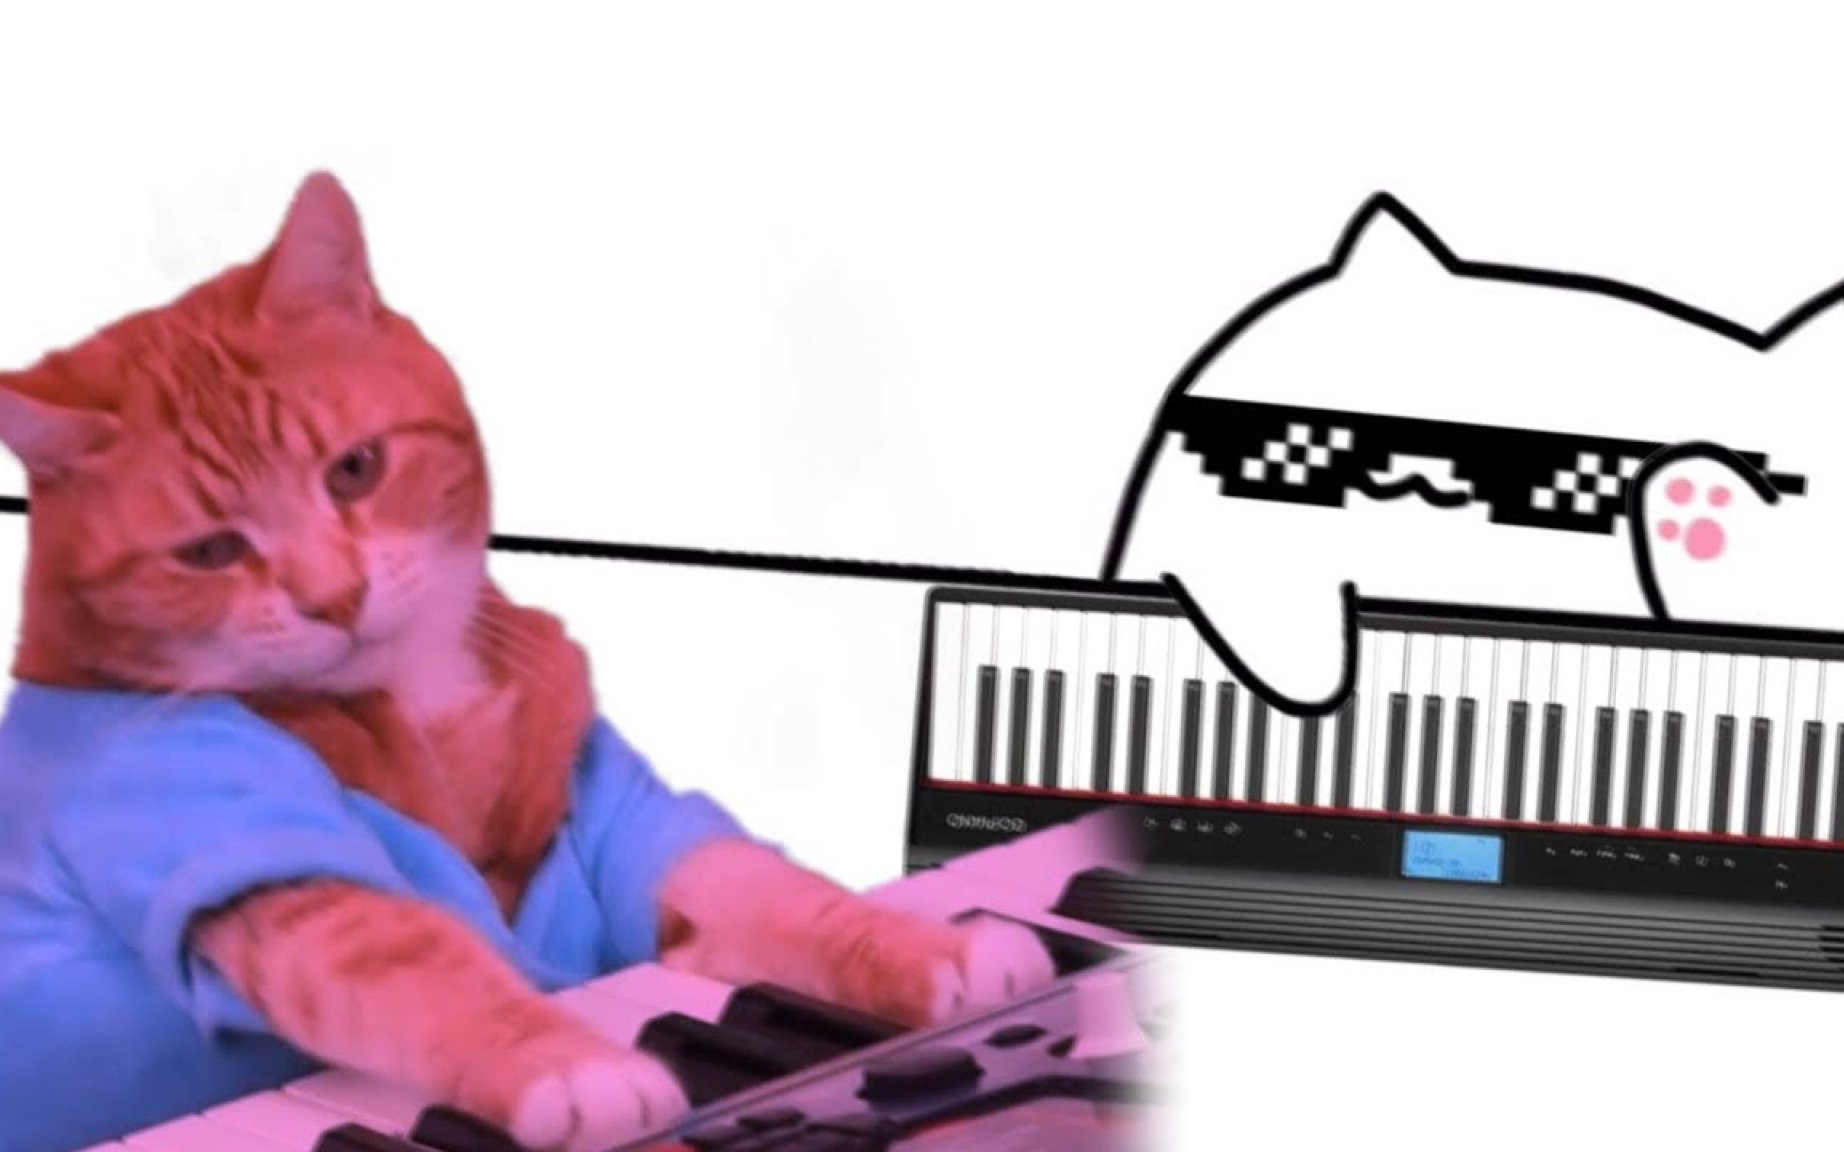 Песня кота на пианино. Бонго Кэт пианино. Кот на пианино. Котик играющий на пианино. Кот на синтезаторе.